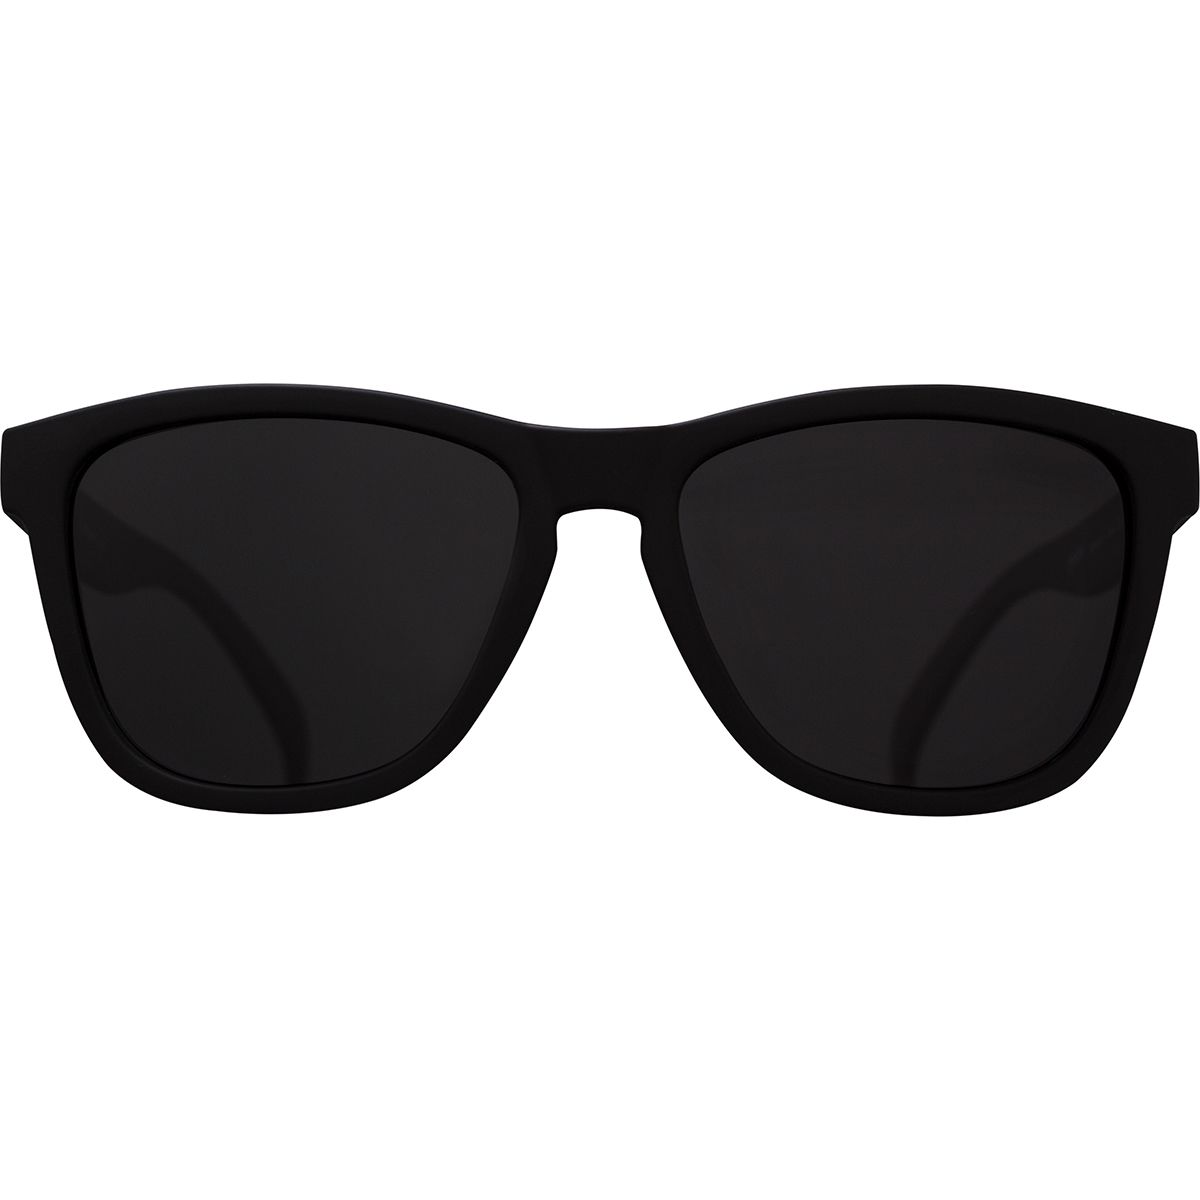  Goodr OG Polarized Sunglasses